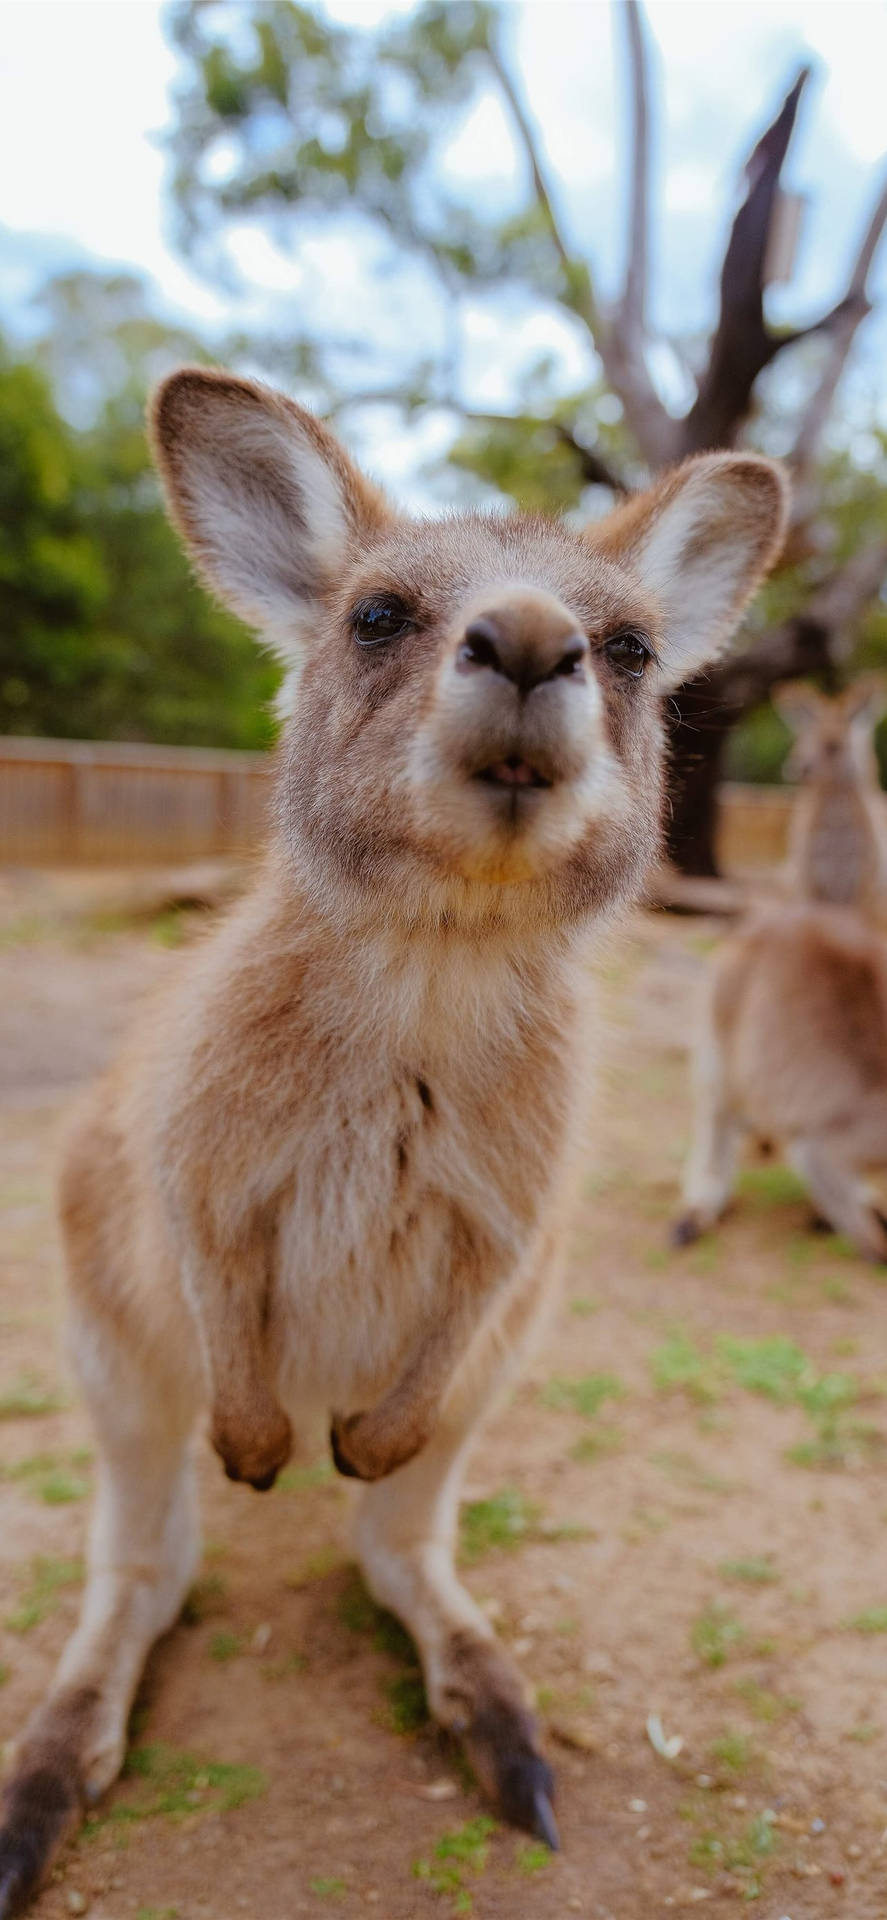 kangaroo iPhone Wallpapers Free Download